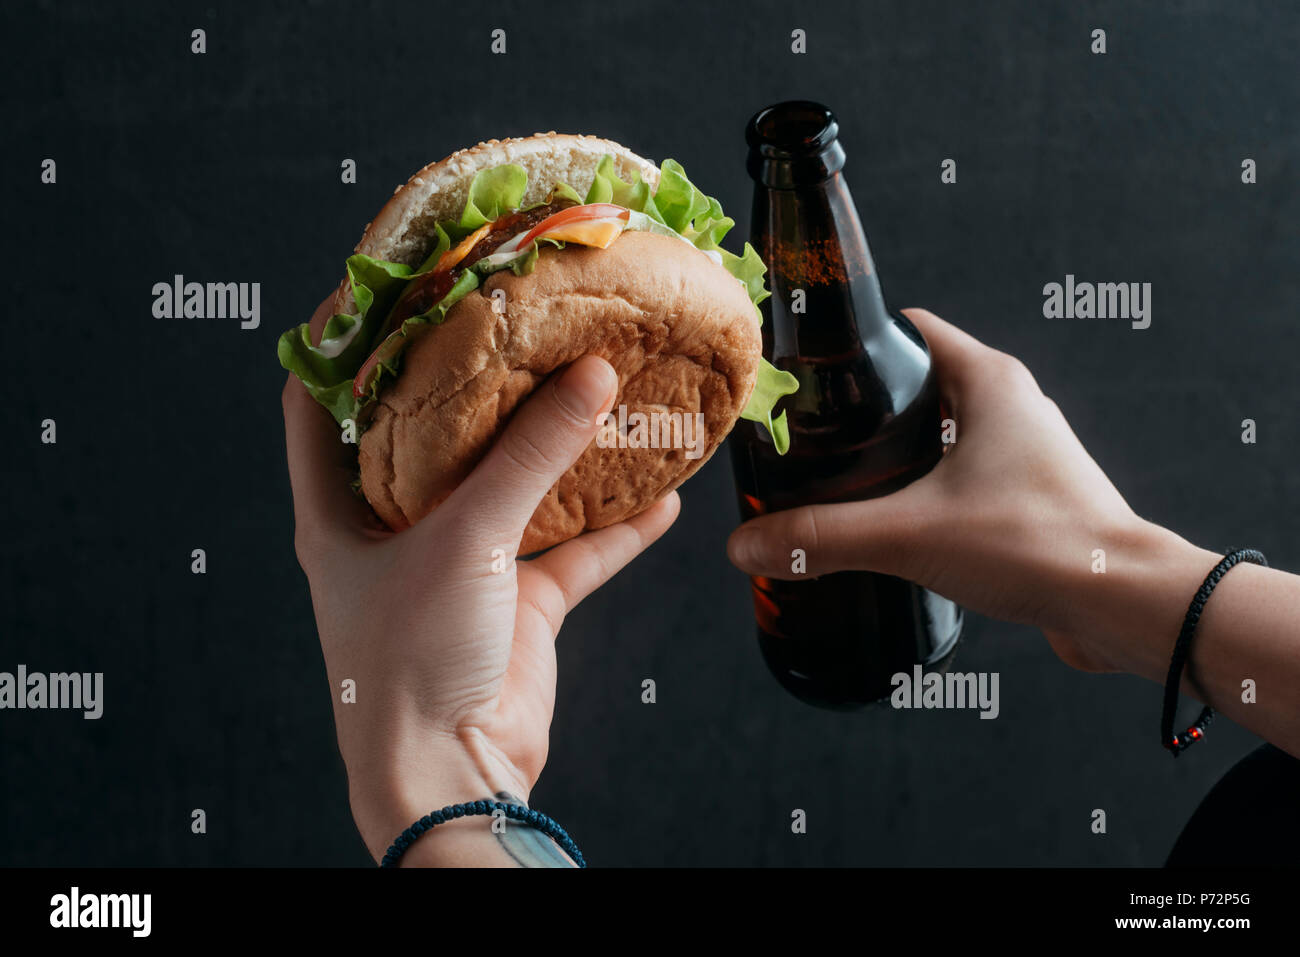 Vista ritagliata della persona in possesso di hamburger e una bottiglia di birra Foto Stock